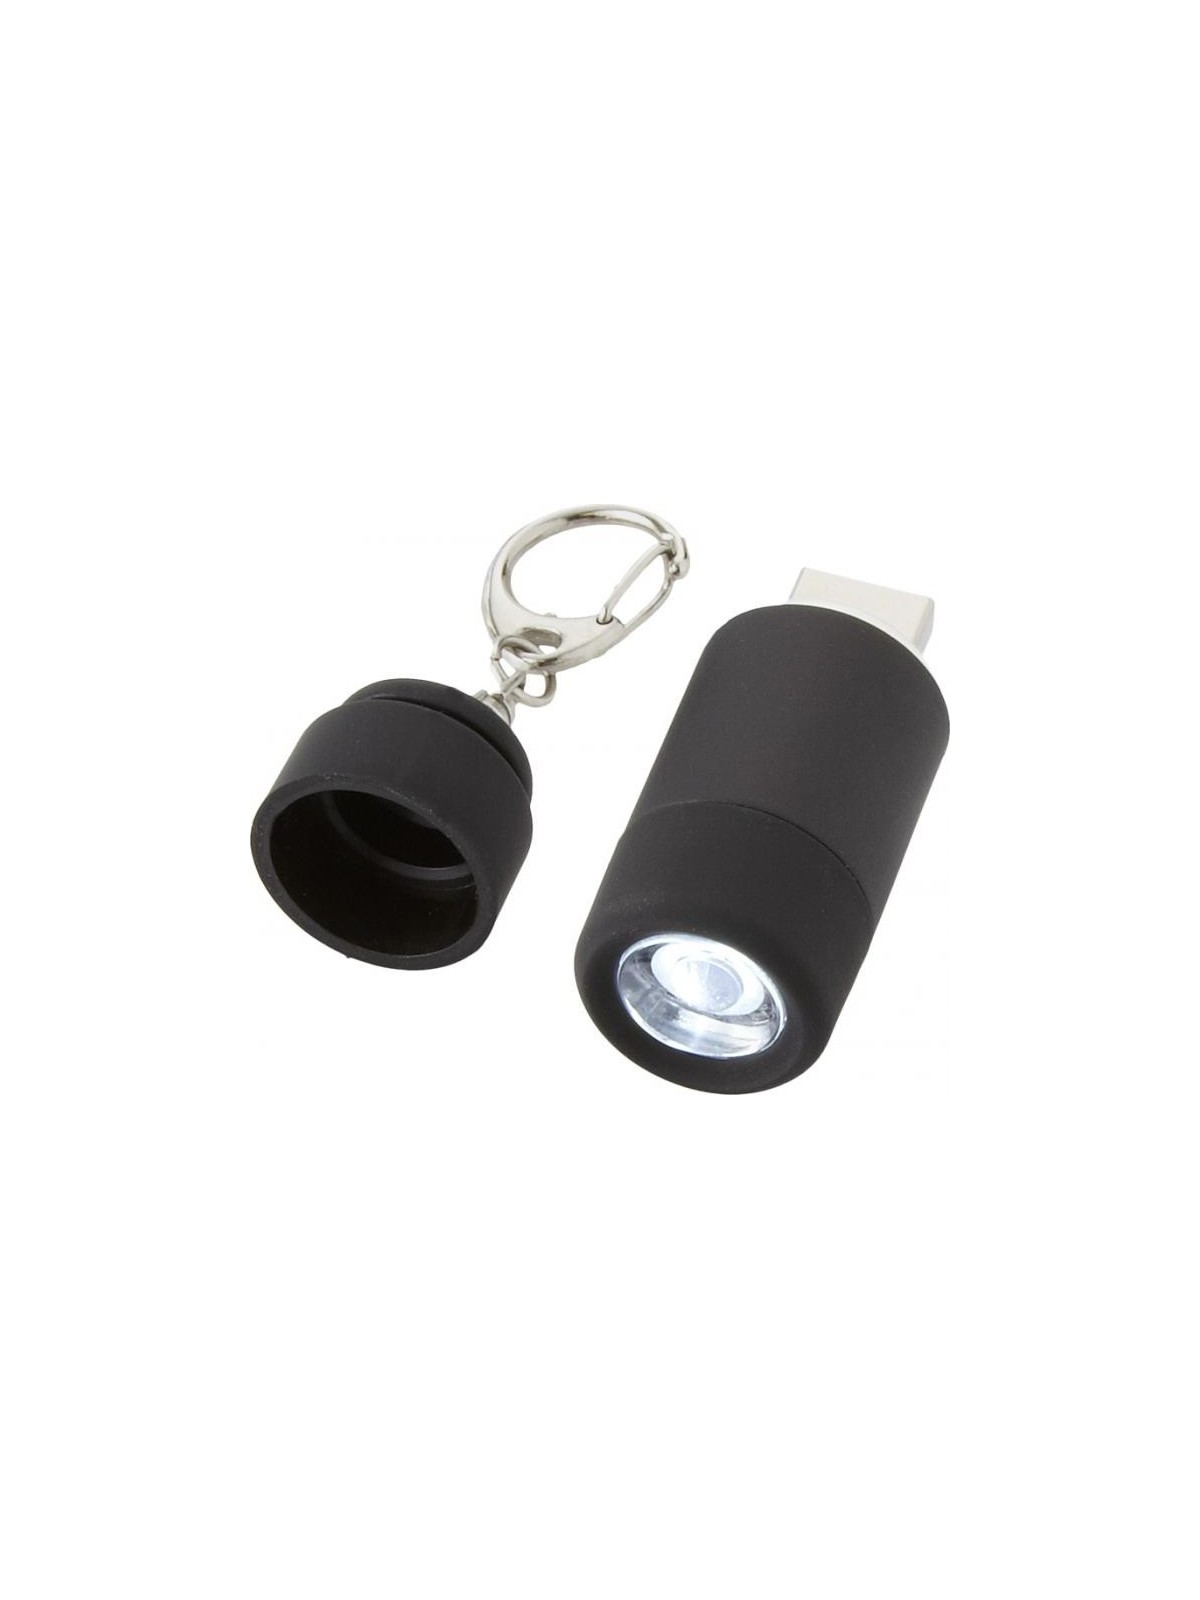 29-089  Porte-clés avec chargeur USB et mini-lampe personnalisé